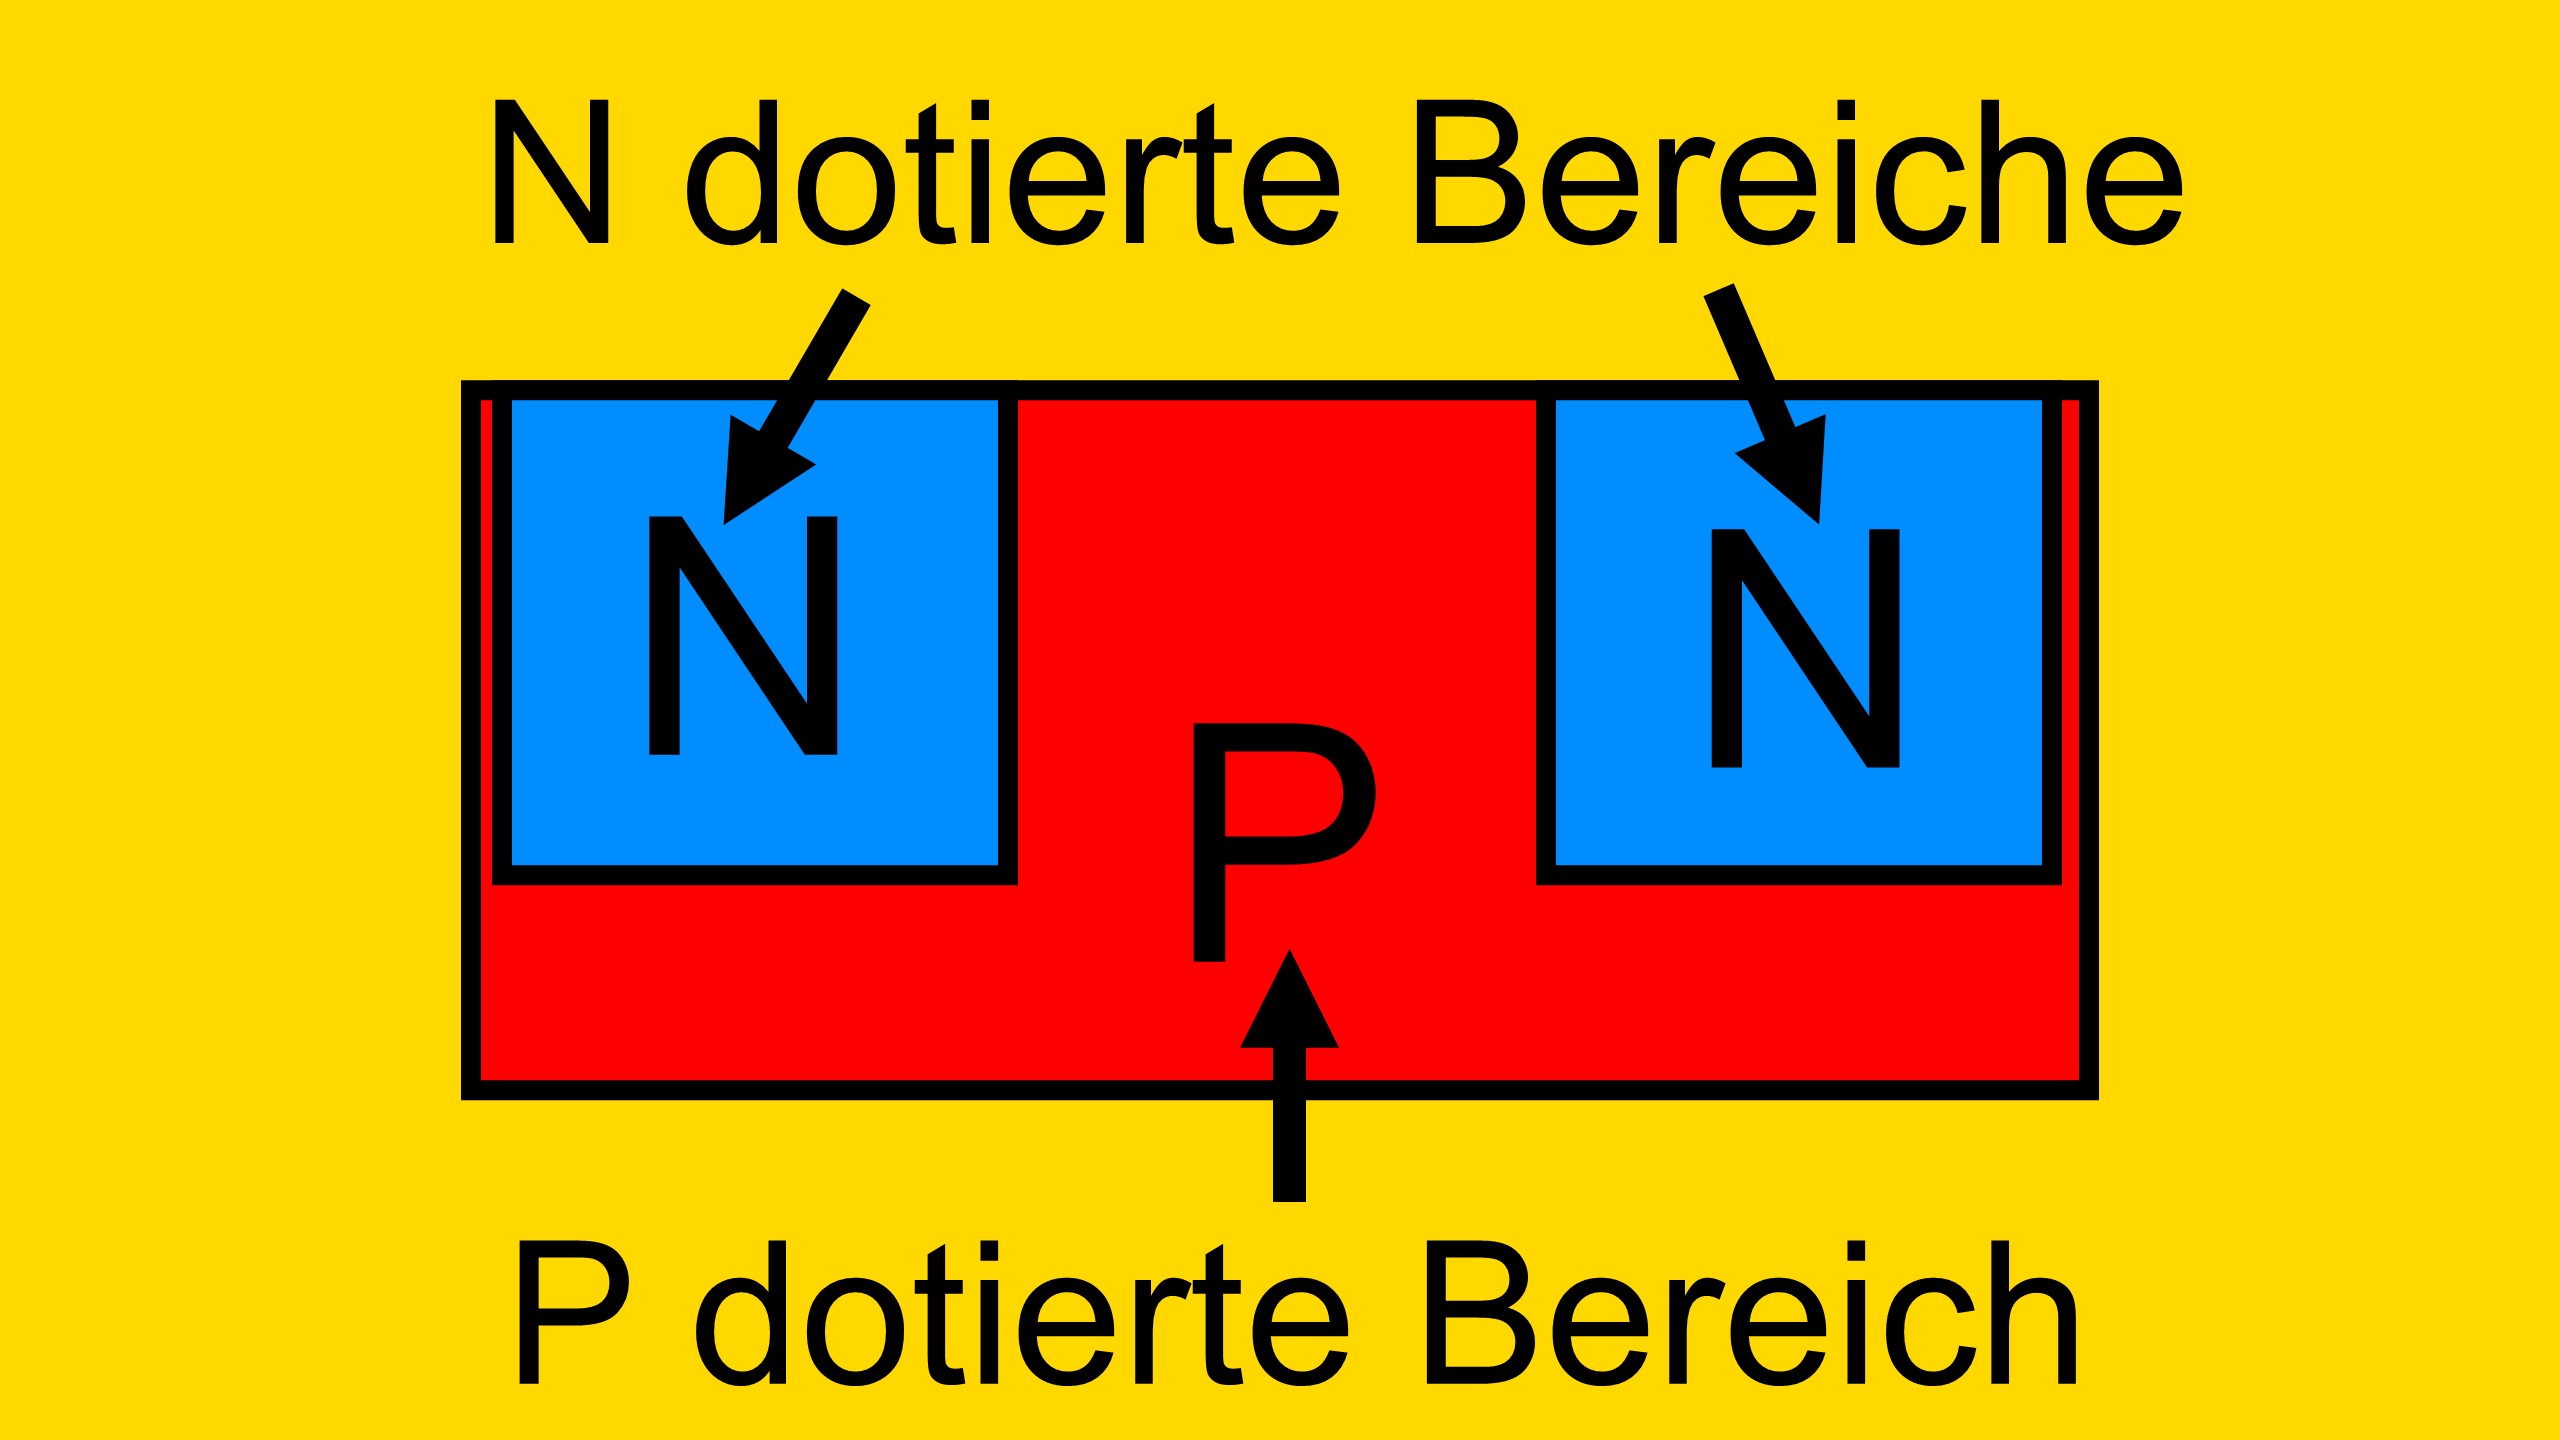 Halbleiter Aufbau des MOSFETs. Es besteht aus zwei N dotierten Bereichen und einem P dotierten Bereich (NPN MOSFET)